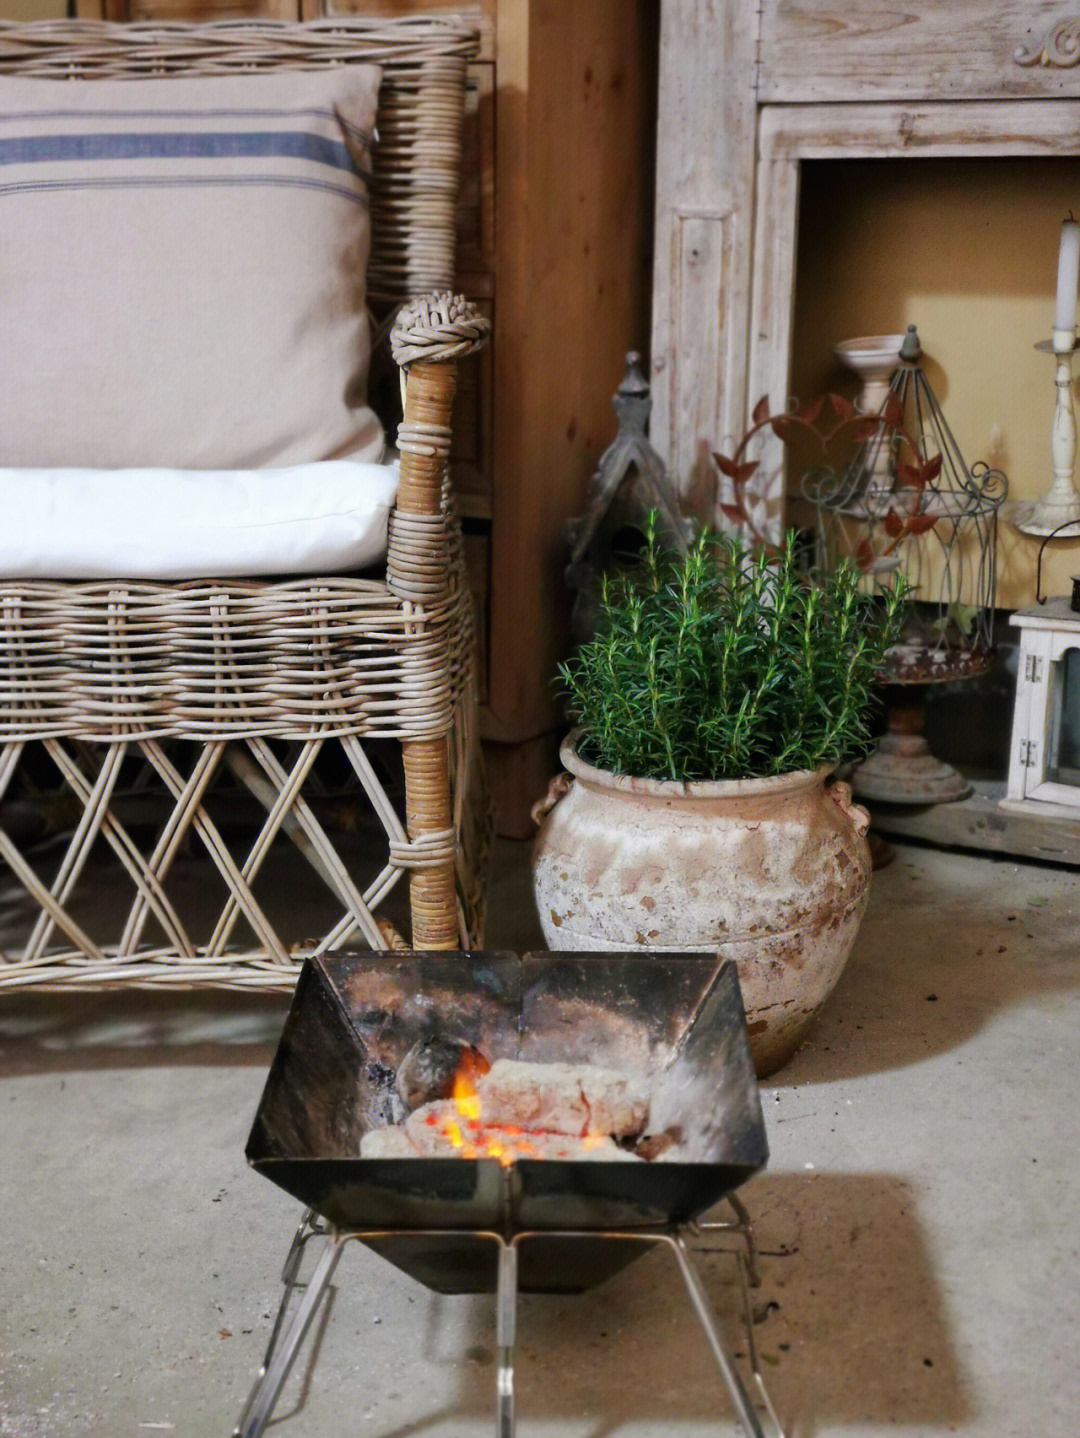 冬天最美好的事大约是劈柴,生火围坐在炉火边火里烤着红薯你听着音乐